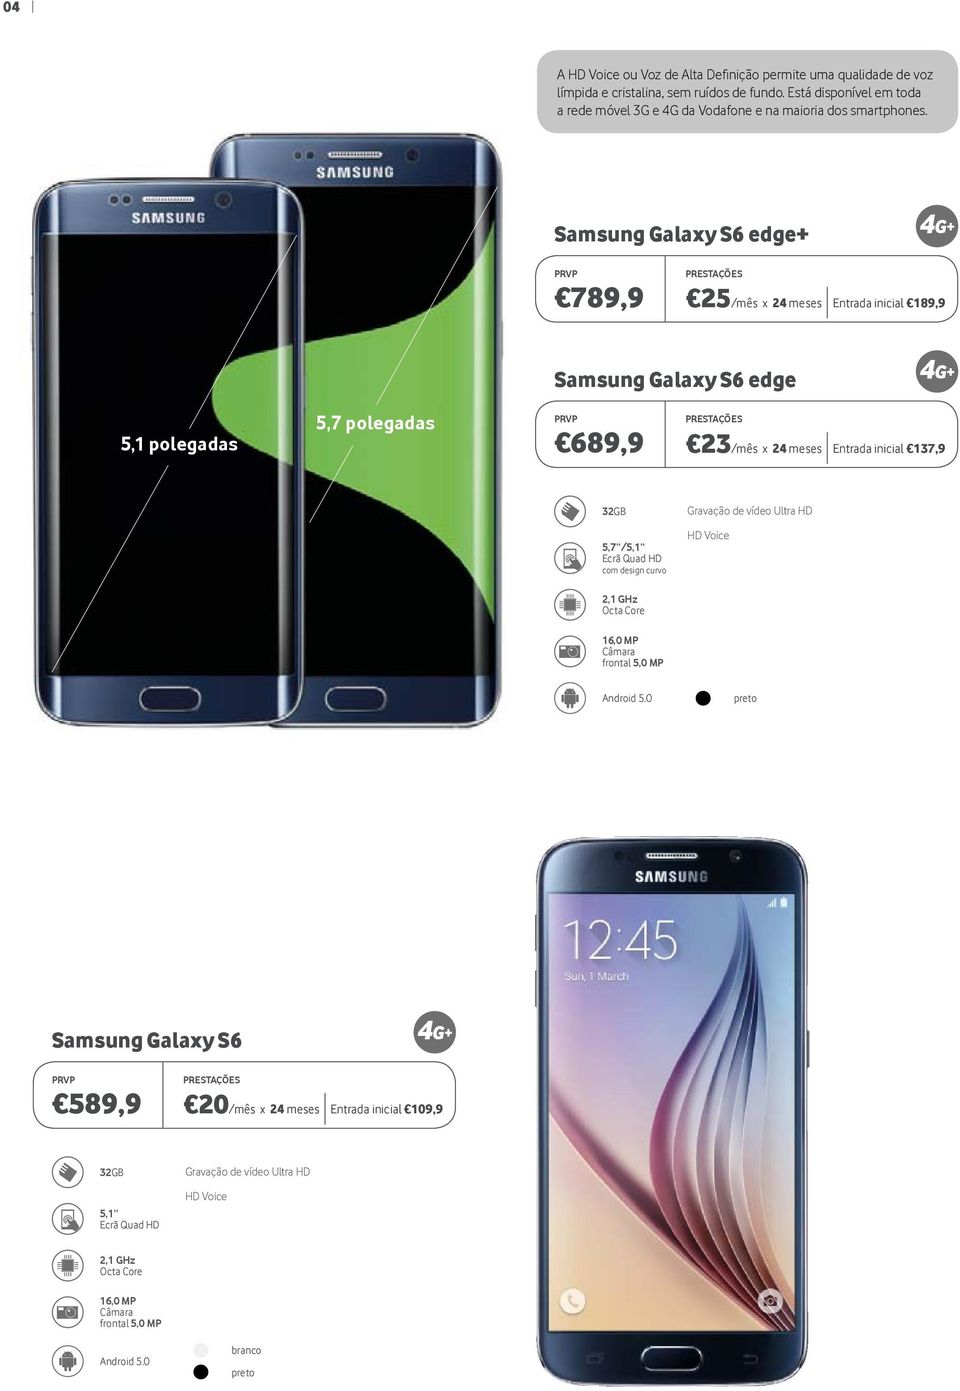 Samsung Galaxy S6 edge+ PRESTAÇÕES 789,9 25/mês x 24 meses Entrada inicial 189,9 5,1 polegadas 5,7 polegadas Samsung Galaxy S6 edge PRESTAÇÕES 689,9 23/mês x 24 meses Entrada inicial